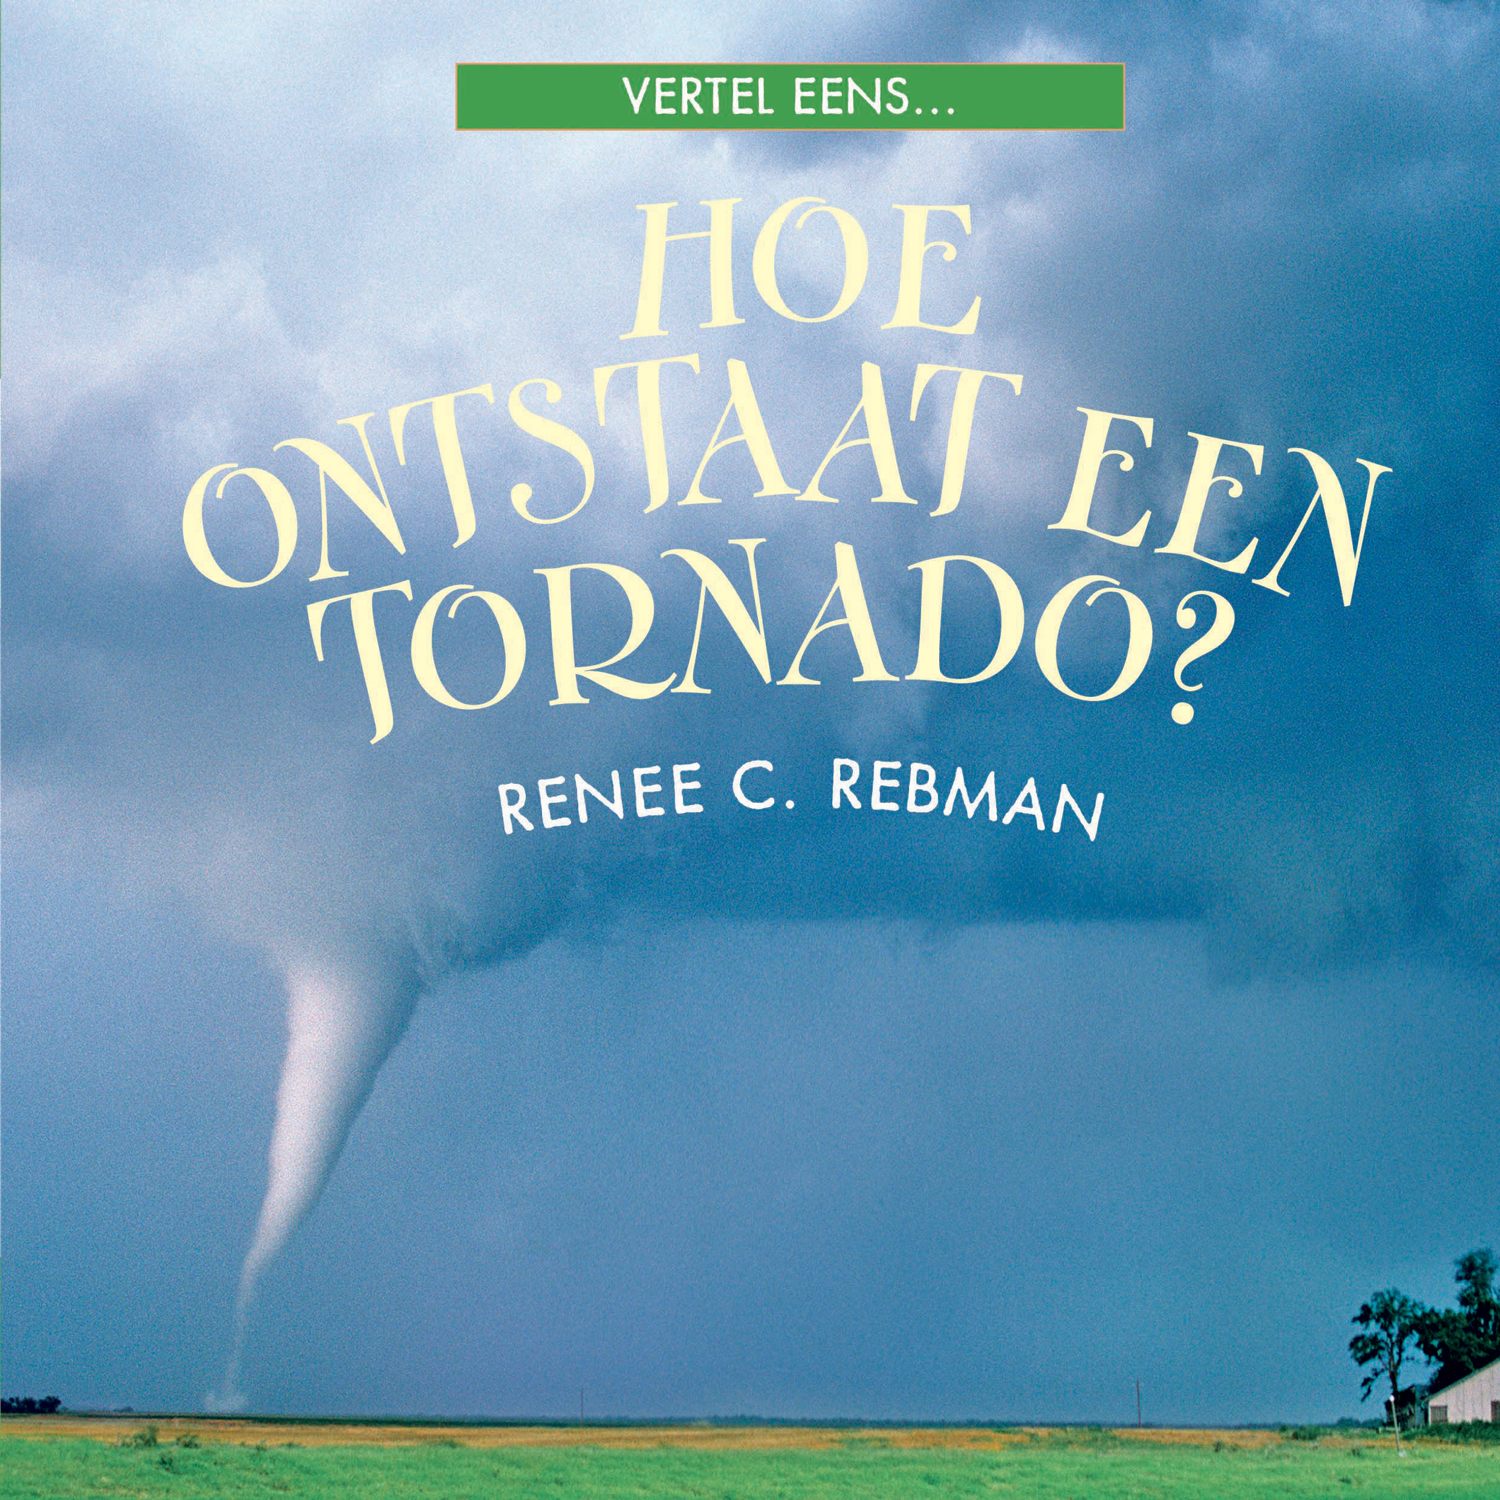 CNBVEE014 Hoe ontstaat een tornado?